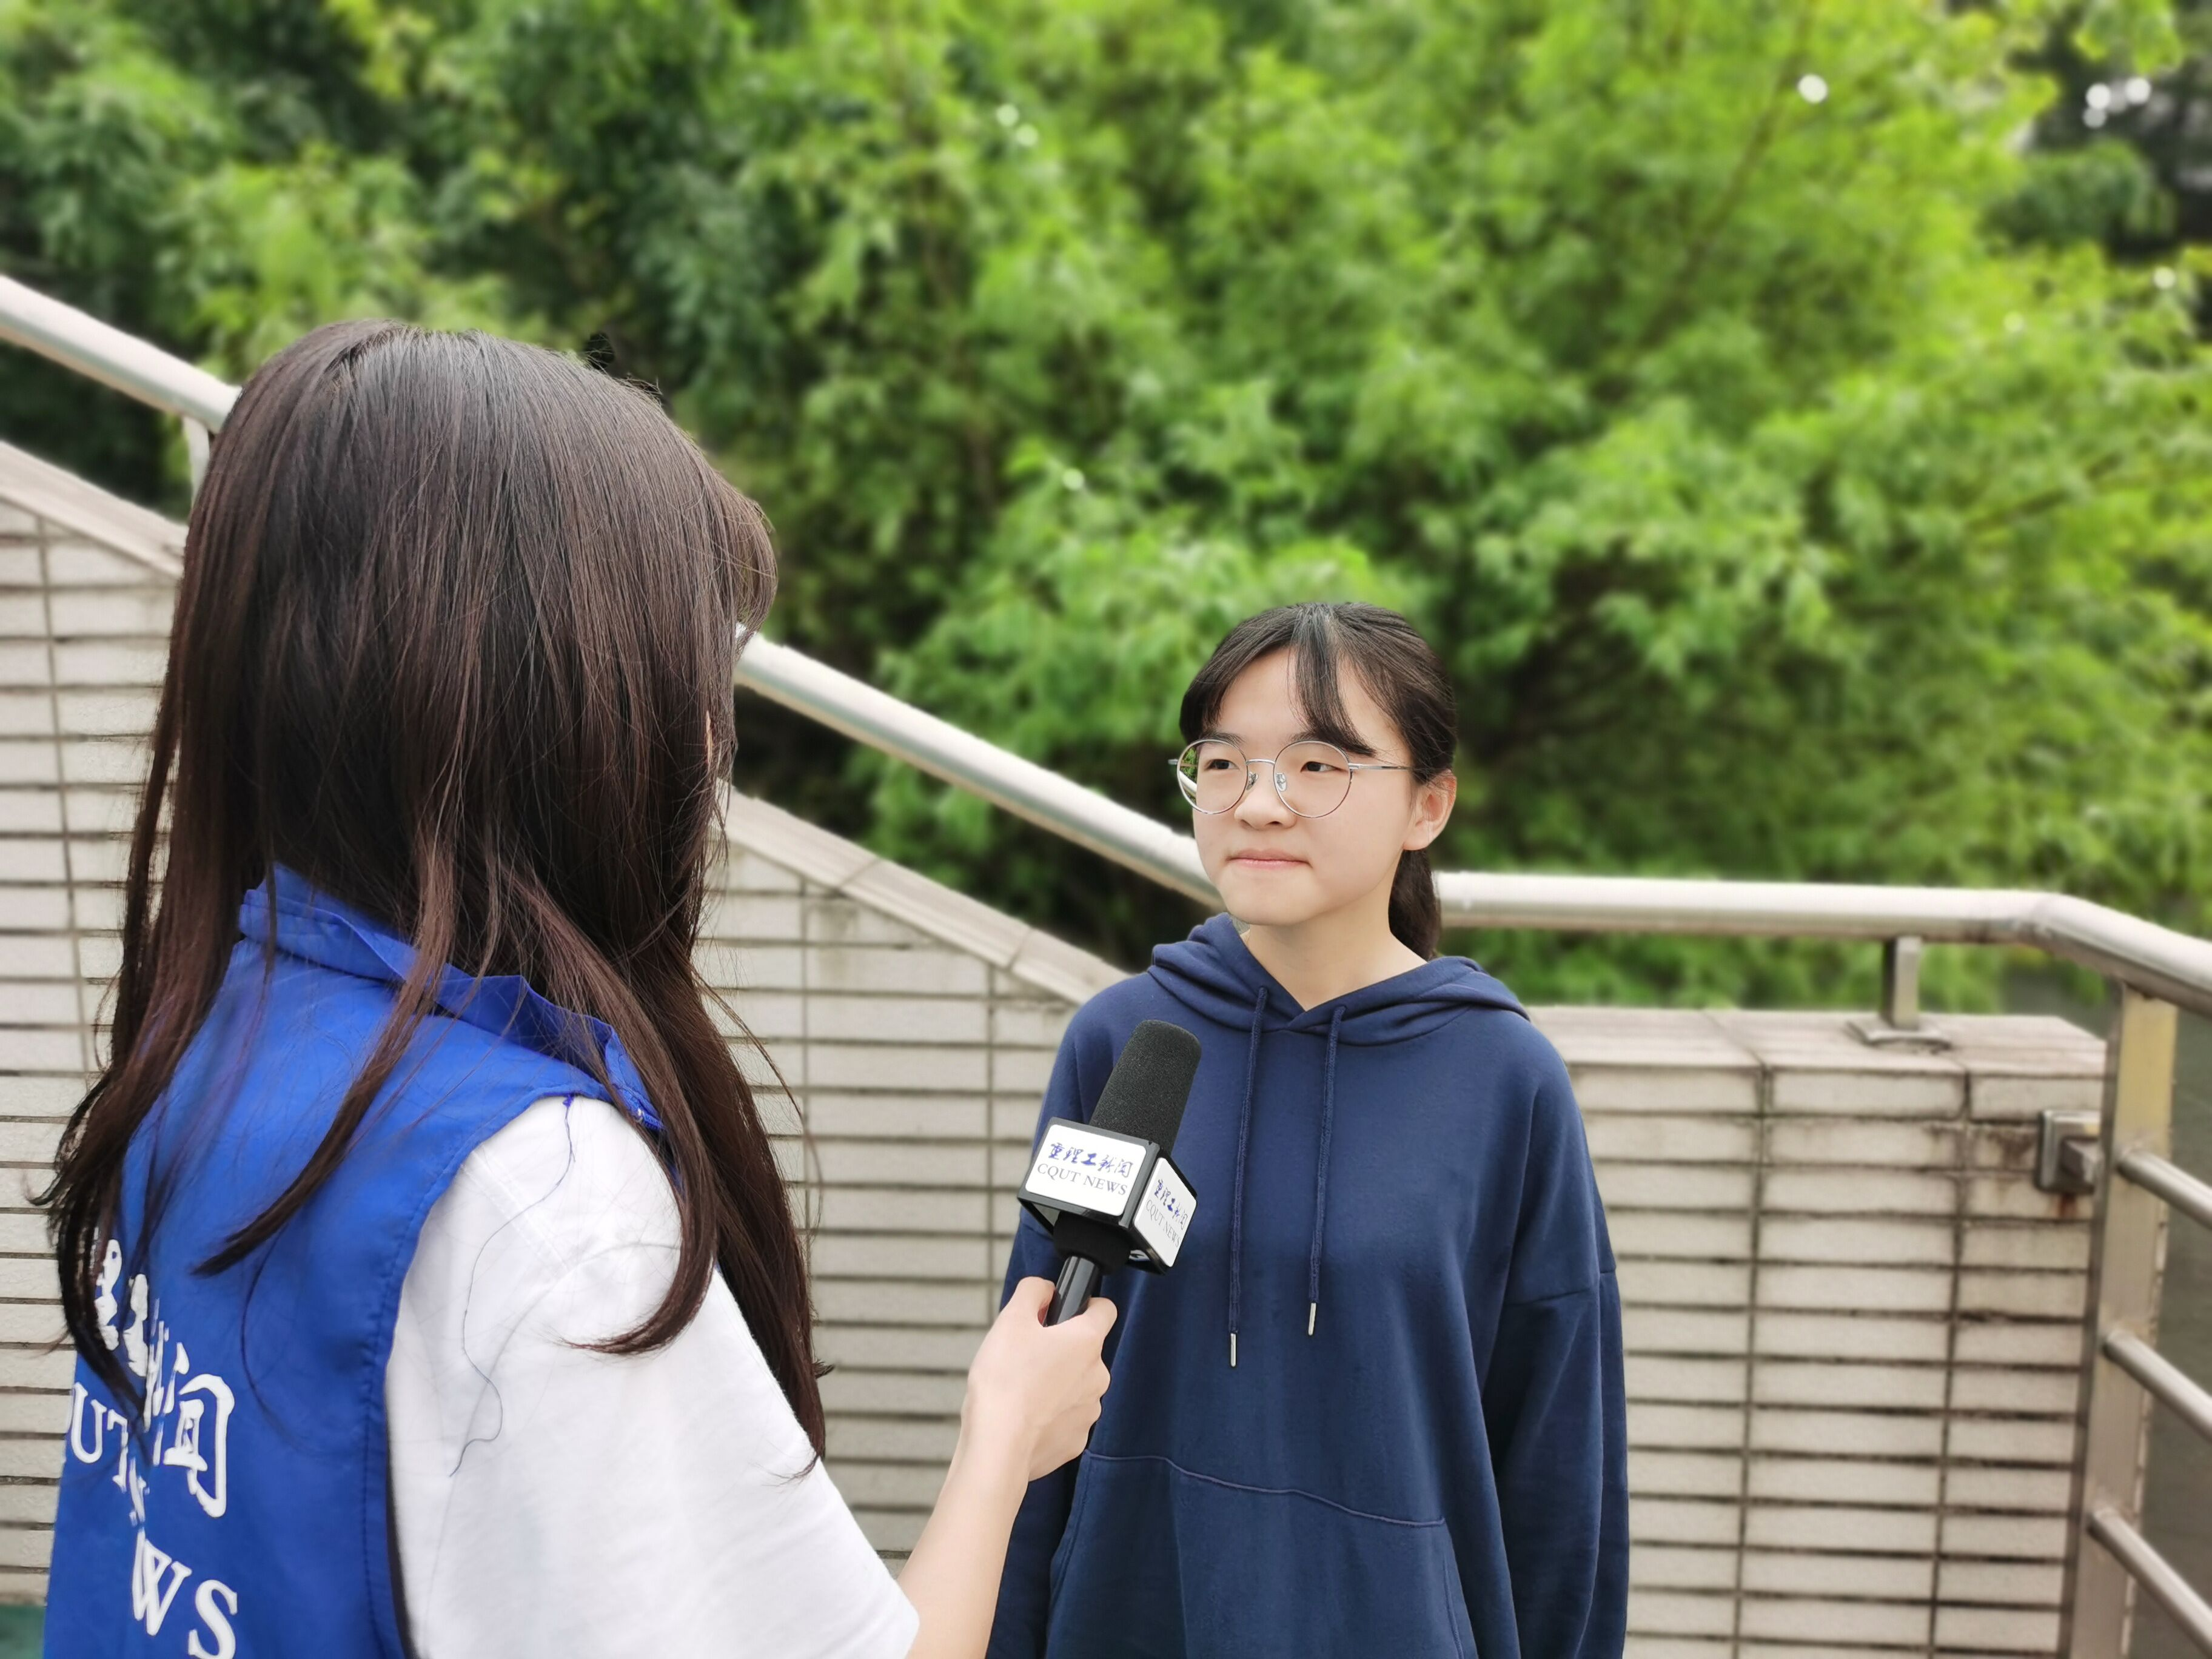 重庆理工大学第十一届学生田径运动会微采访第⑨弹